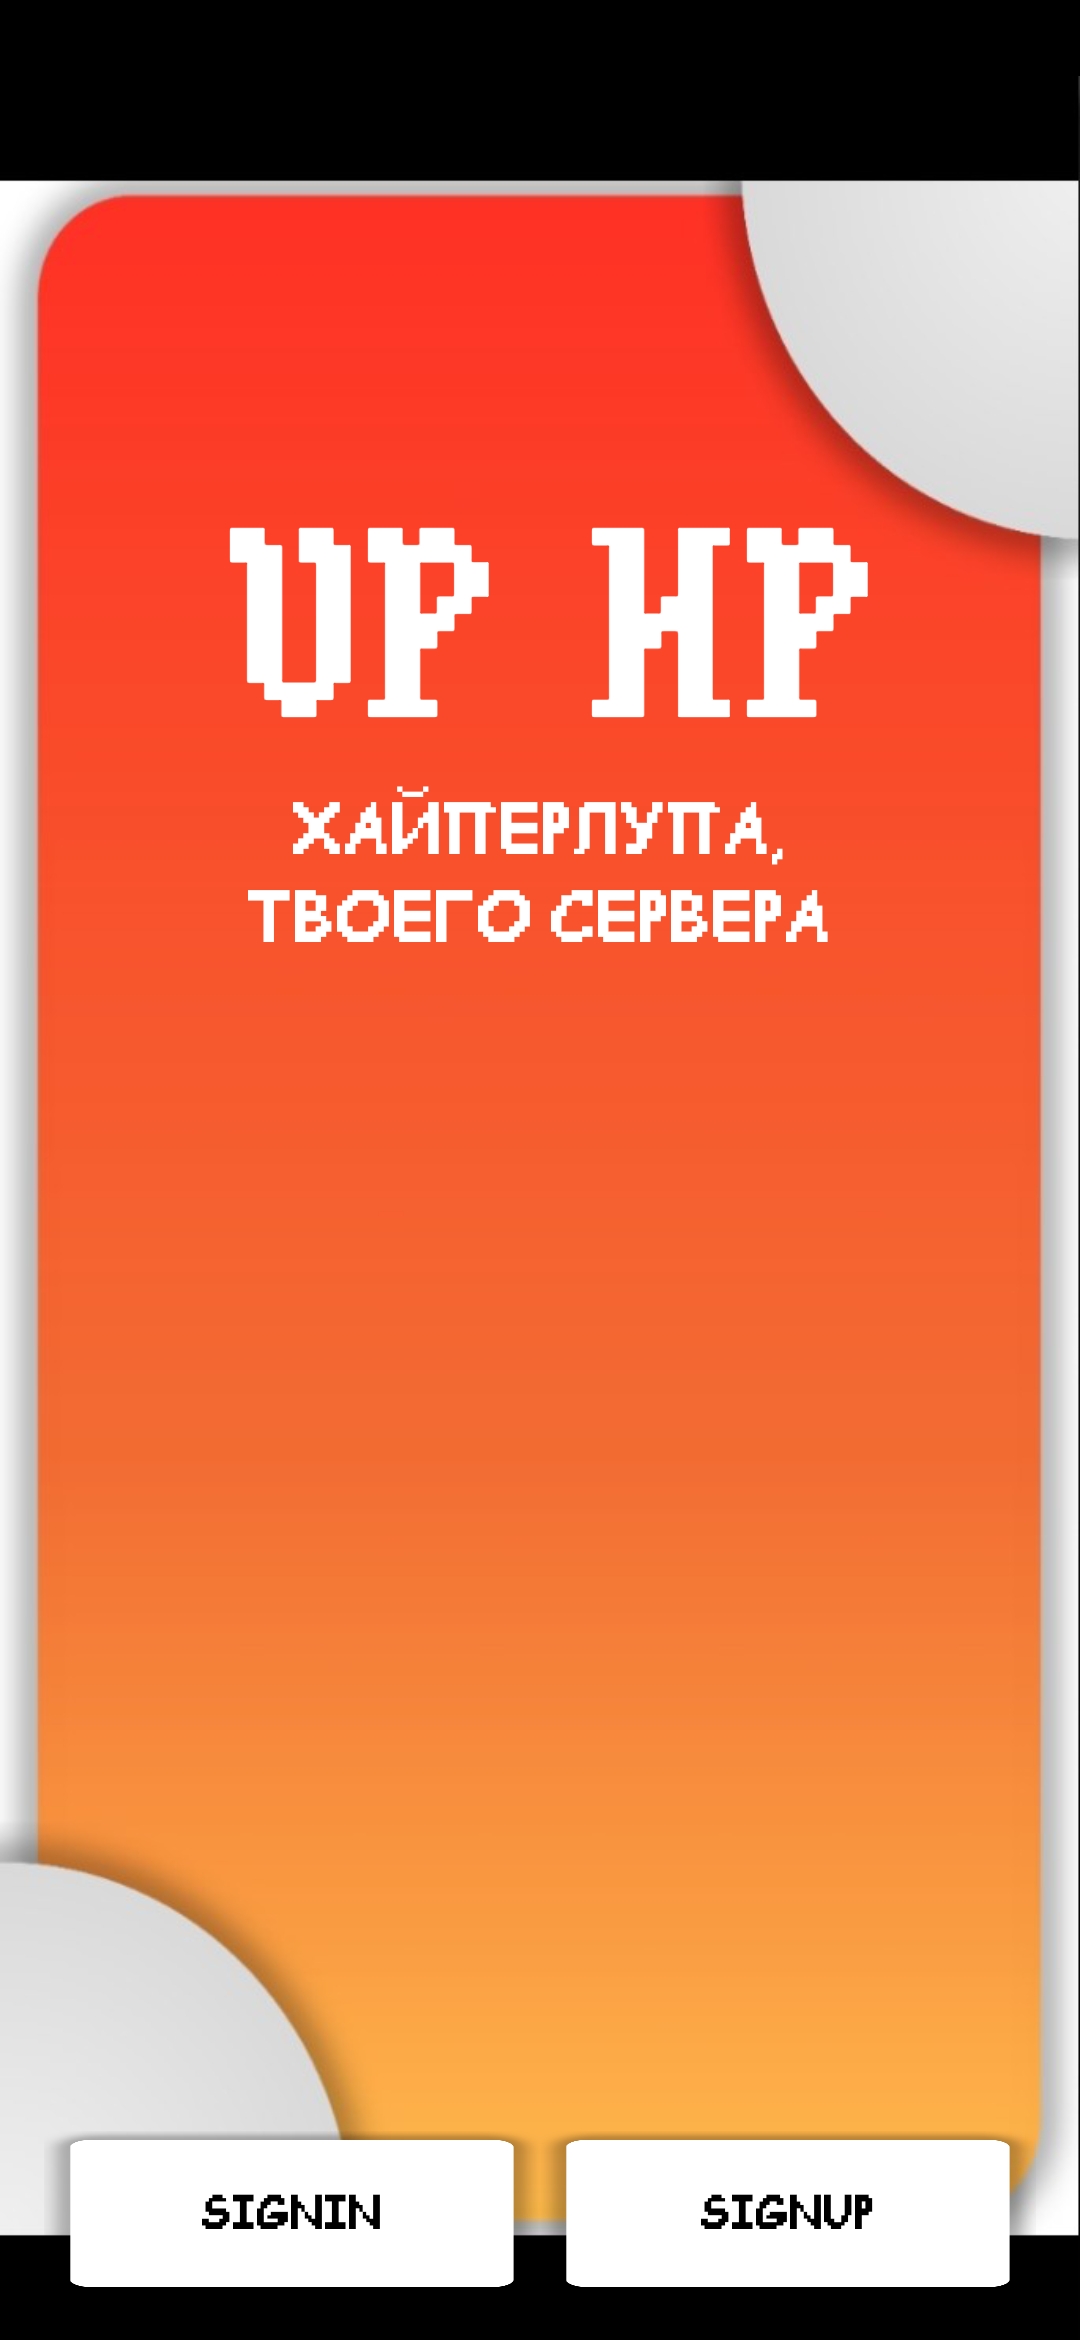 VP HP - Хайпер лупа 2.0